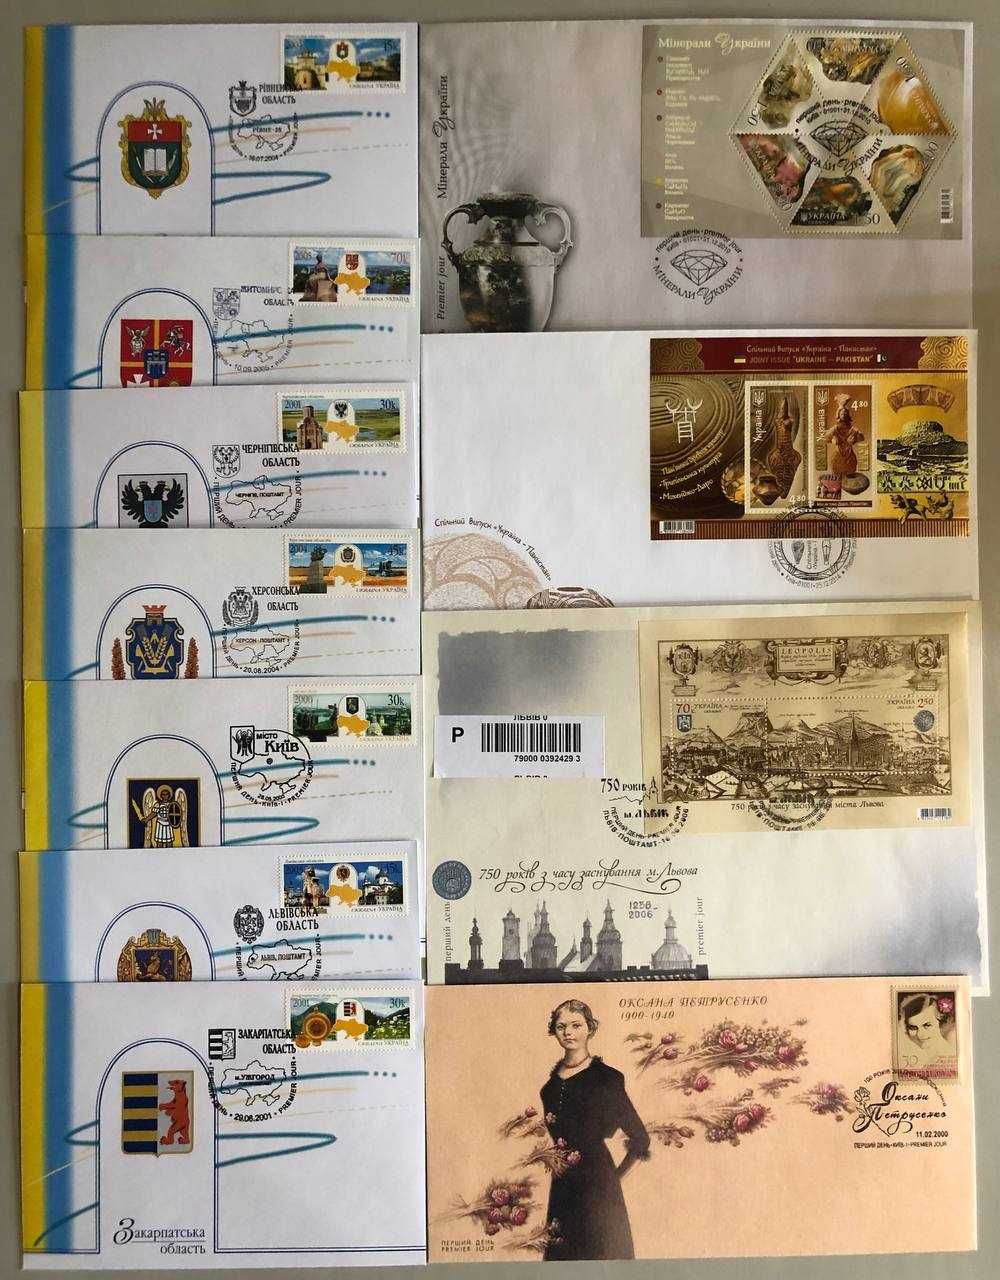 Поштові марки України Конверти першого дня Кпд Premier jour